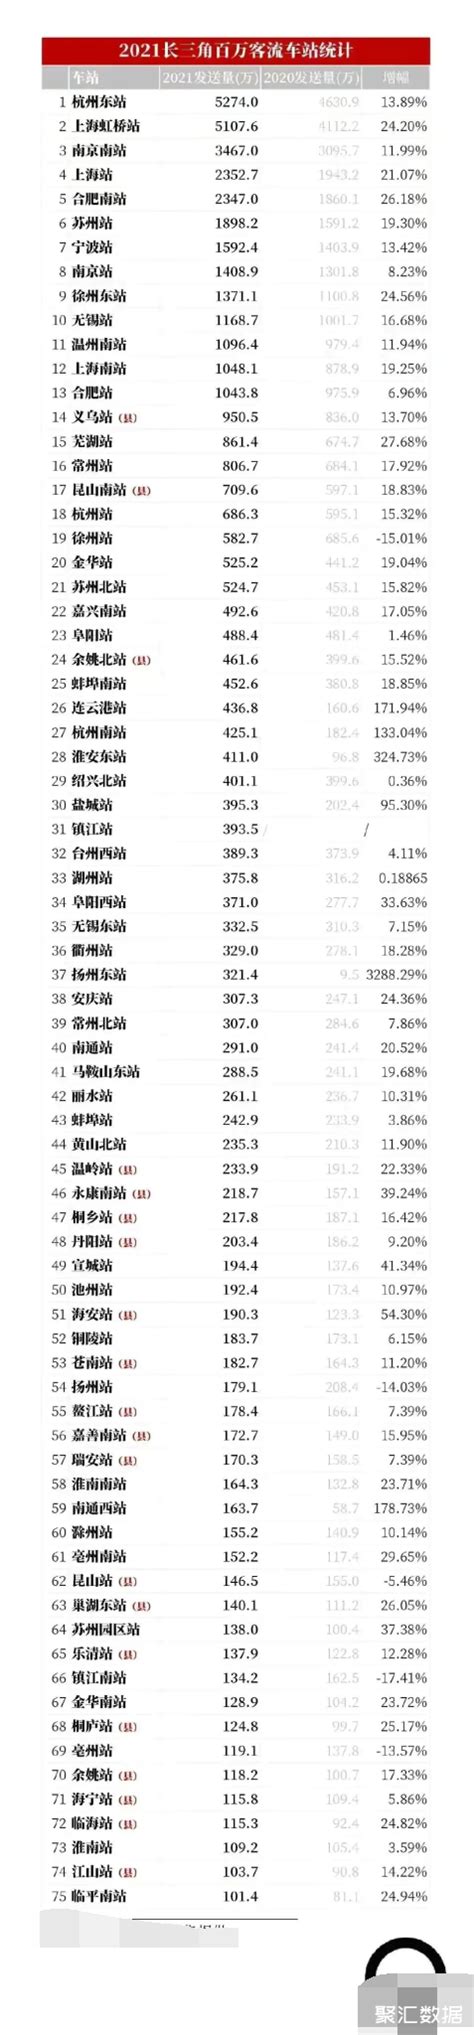 2022年上半年江苏各市GDP排行榜 苏州排名第一 南京排名第二_全省_总量_盐城市